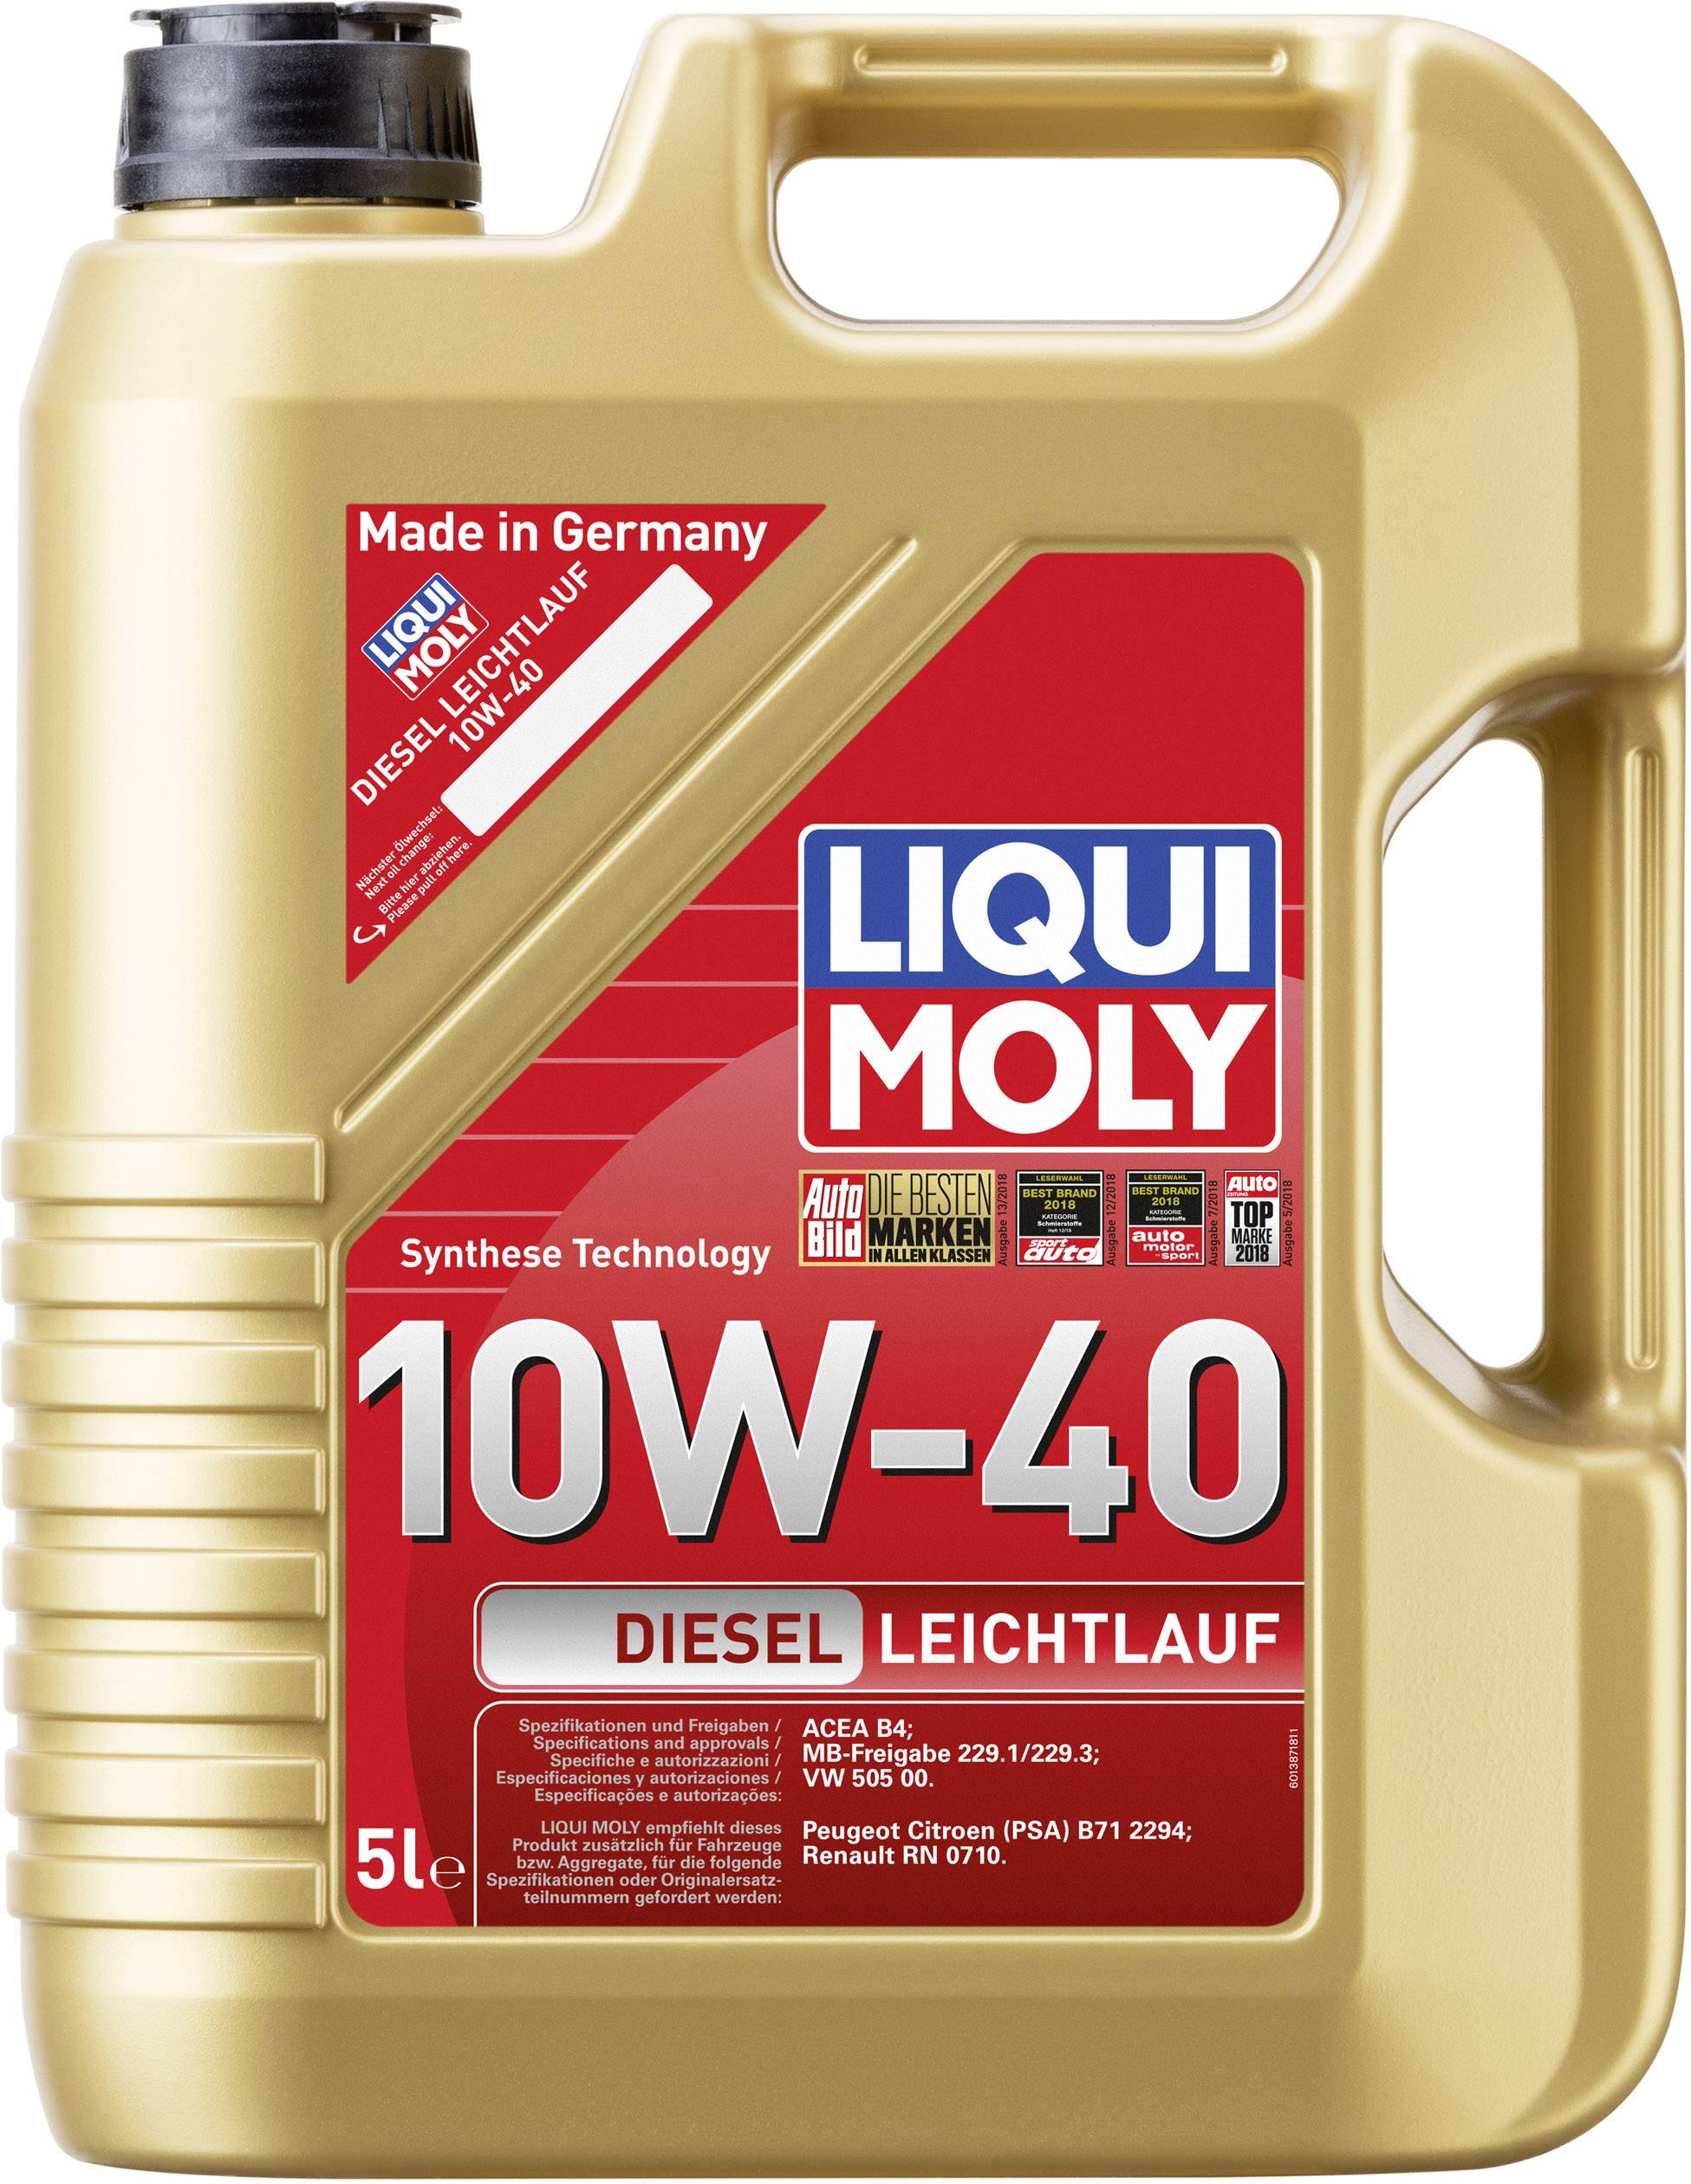 Масло люки. Моторное масло Liqui Moly 10w-40. Ликви моли 10w 40 дизель 5л. Дизельное масло Ликви моли 10w 40. Масло Ликви моли 10w 40 1л.